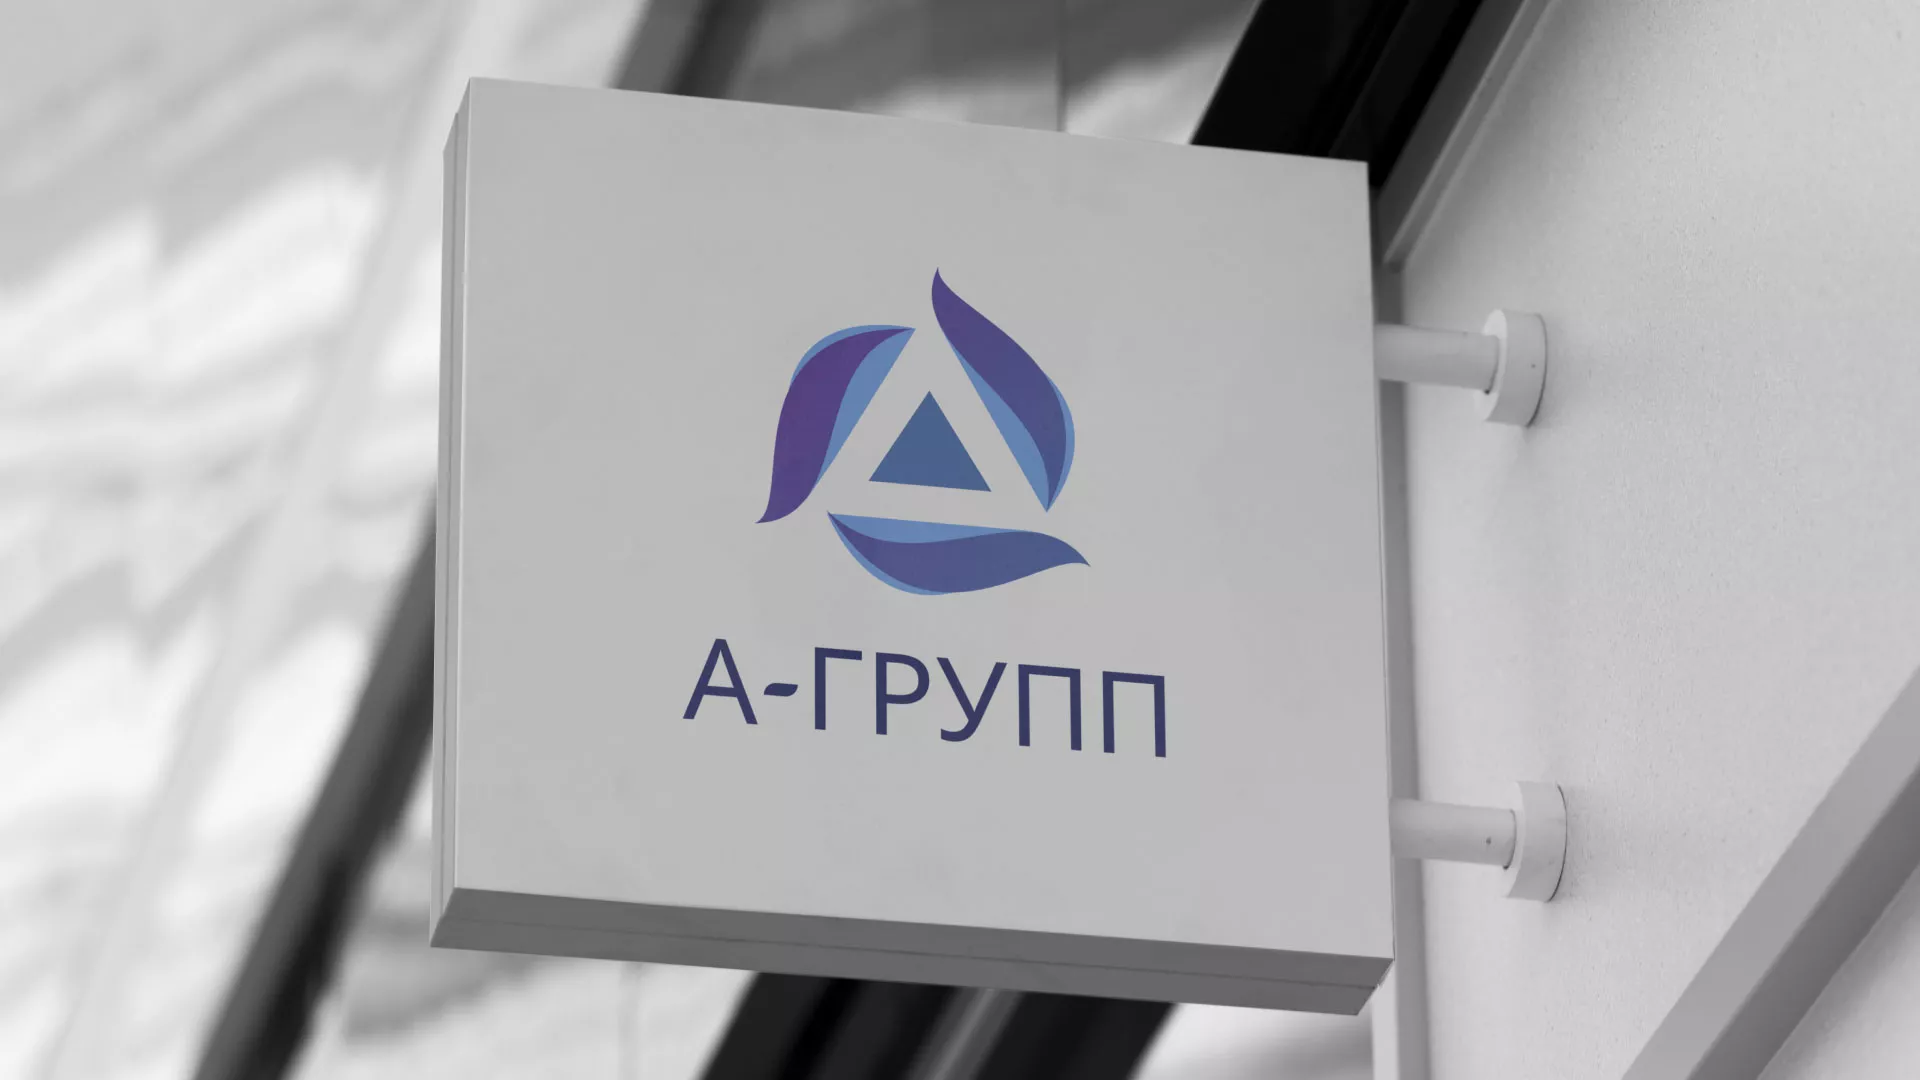 Создание логотипа компании «А-ГРУПП» в Шелехове